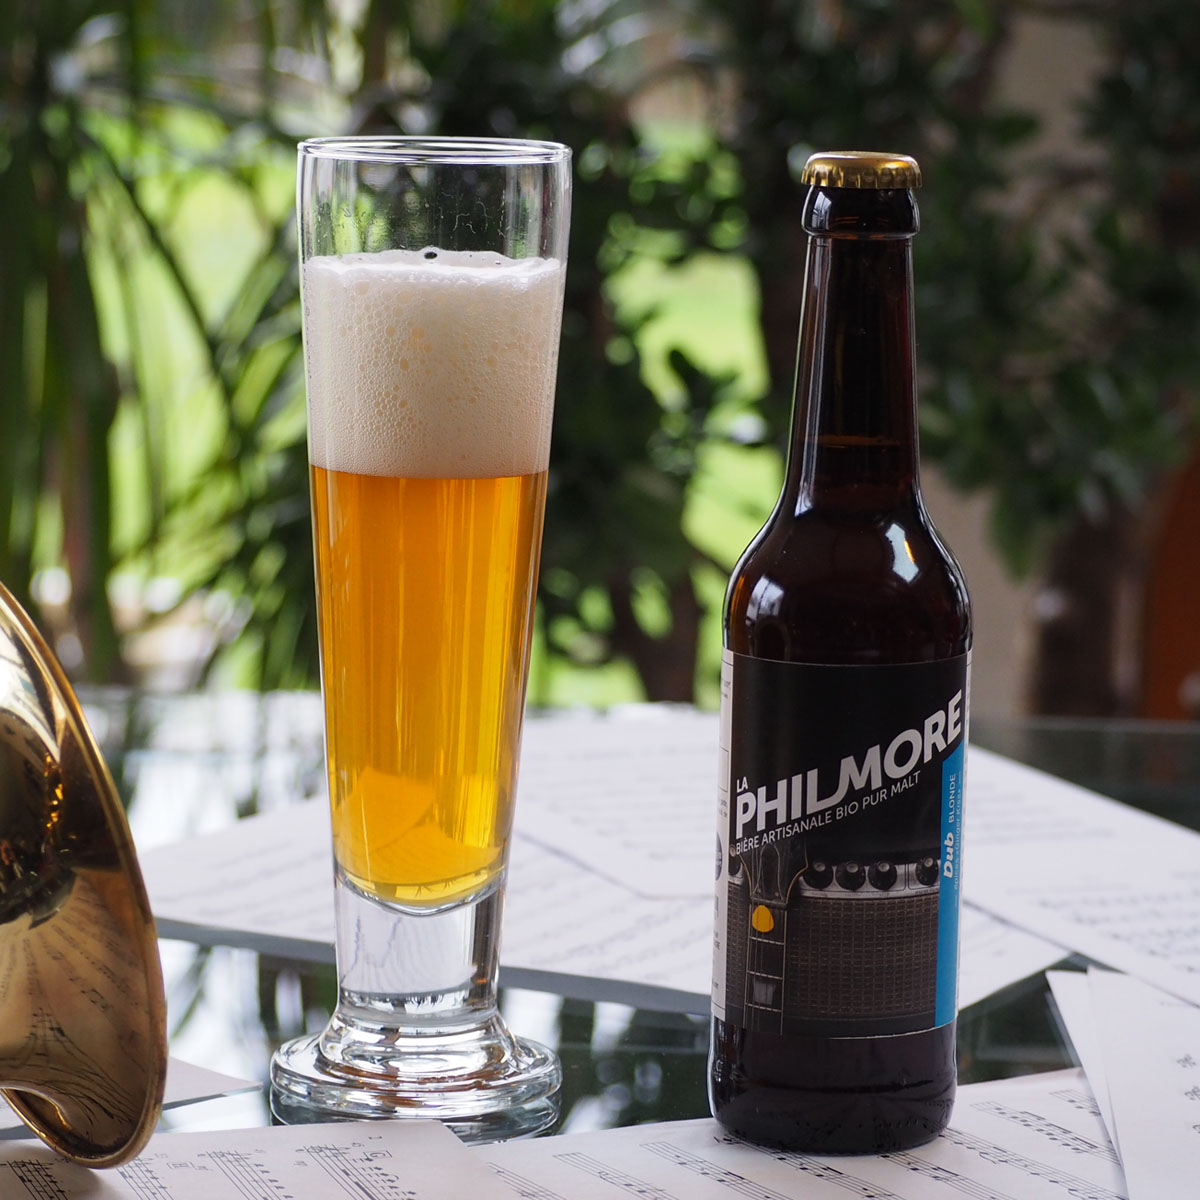 La Philmore Dub – bière artisanale bio pur malt